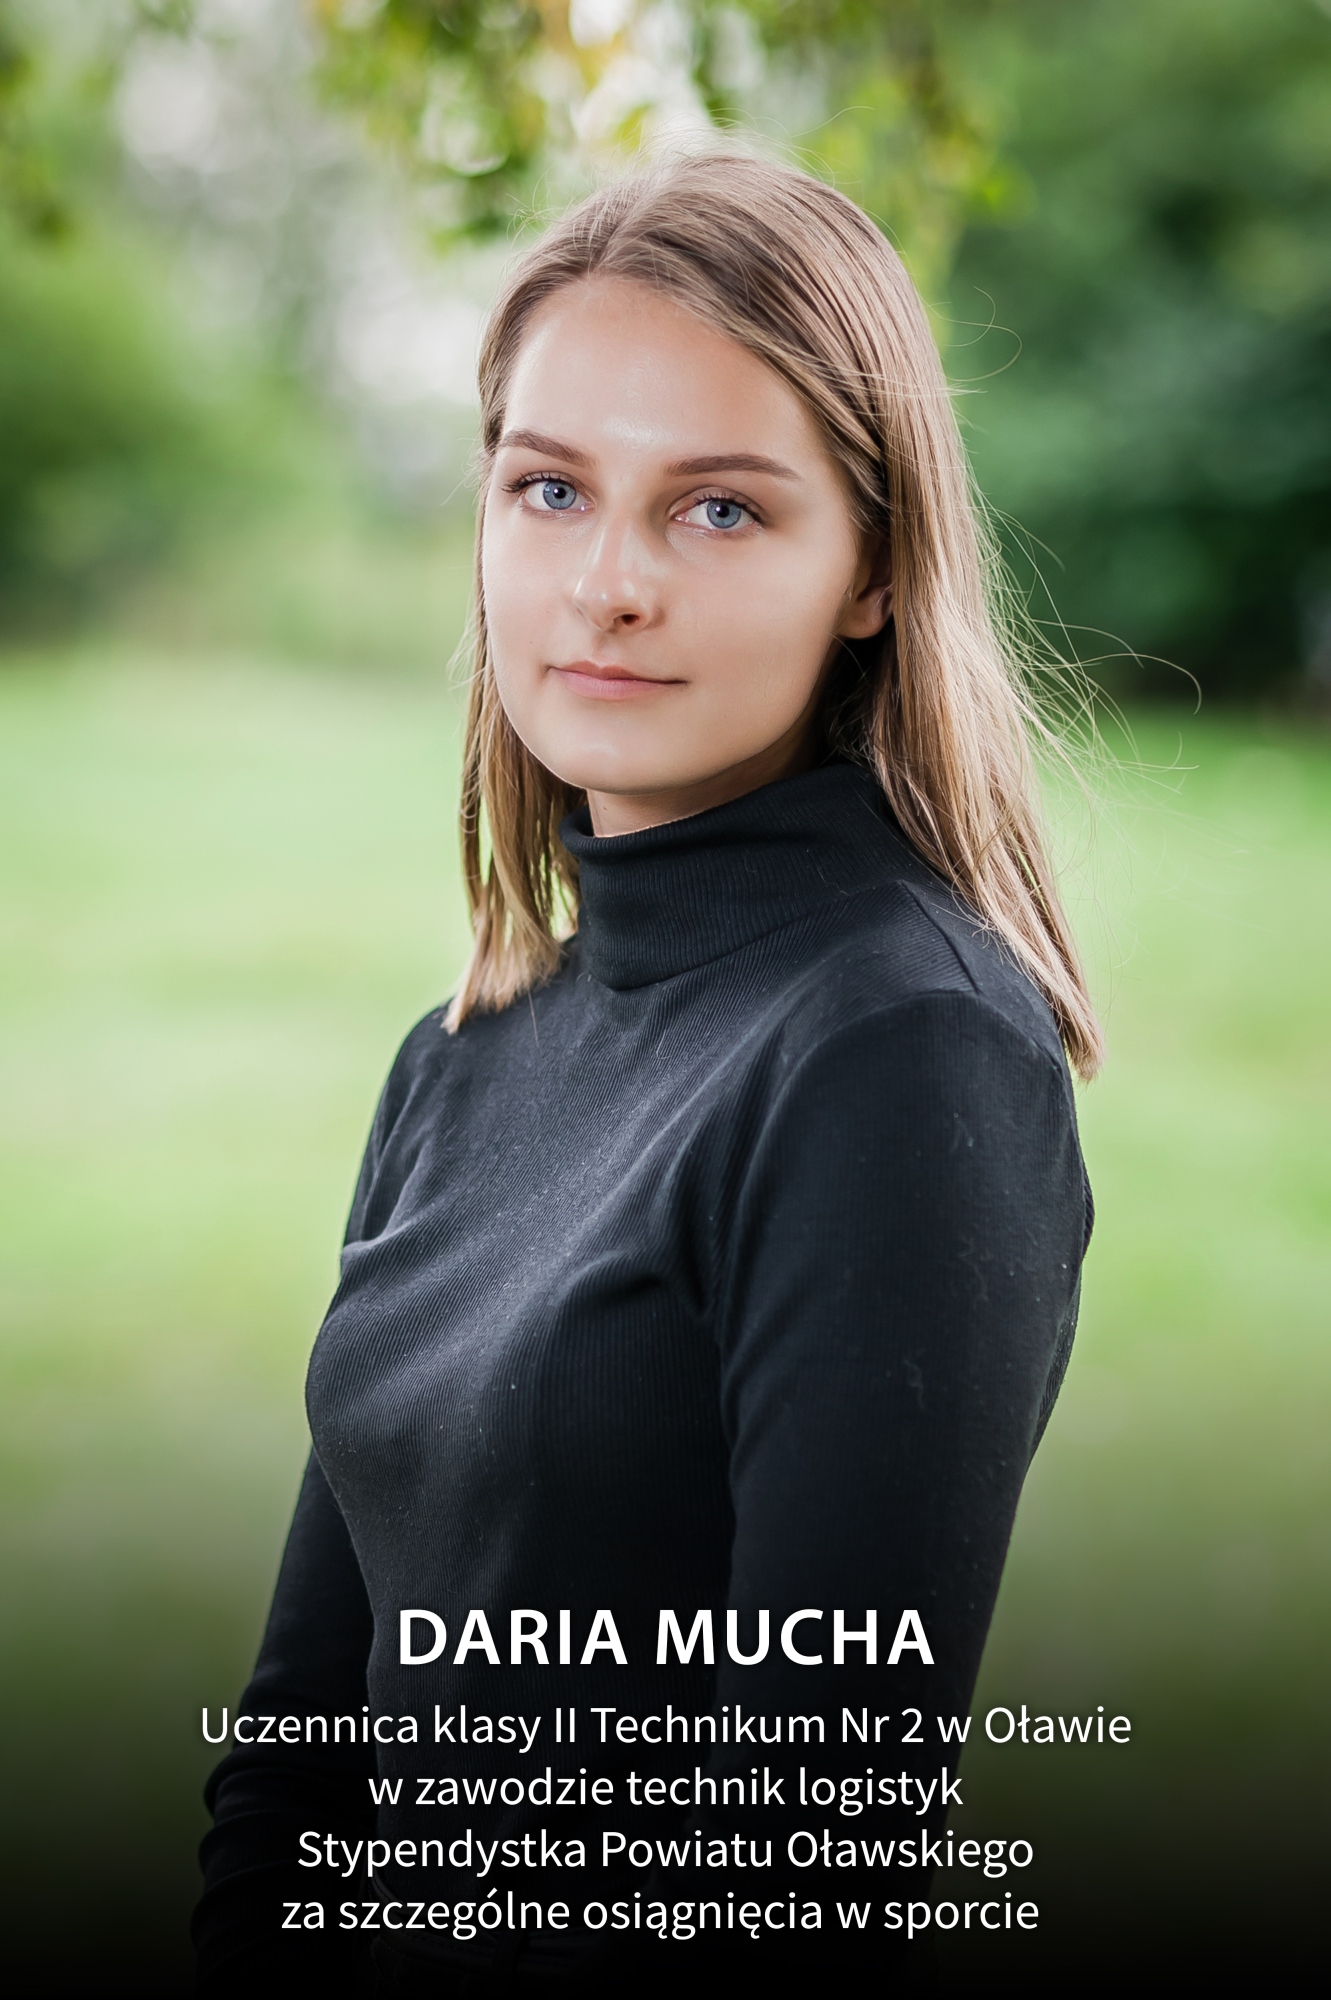 Daria Mucha